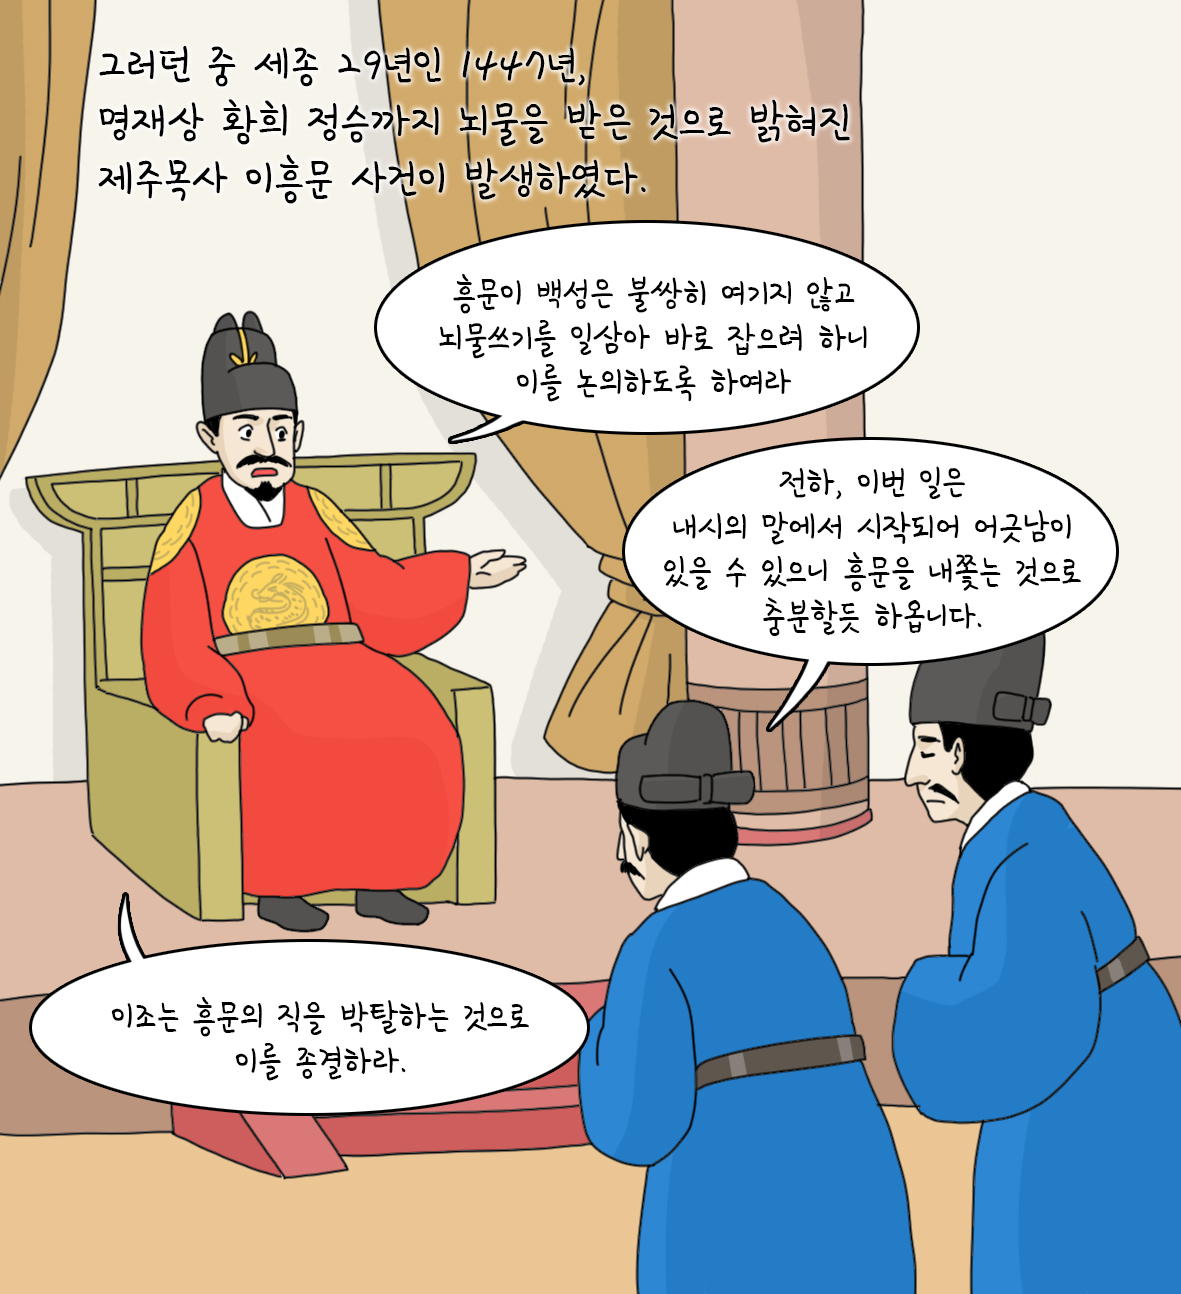 기록으로 나는 <타임머신> 조선 '이흥문법' vs 대한민국 '김영란법'